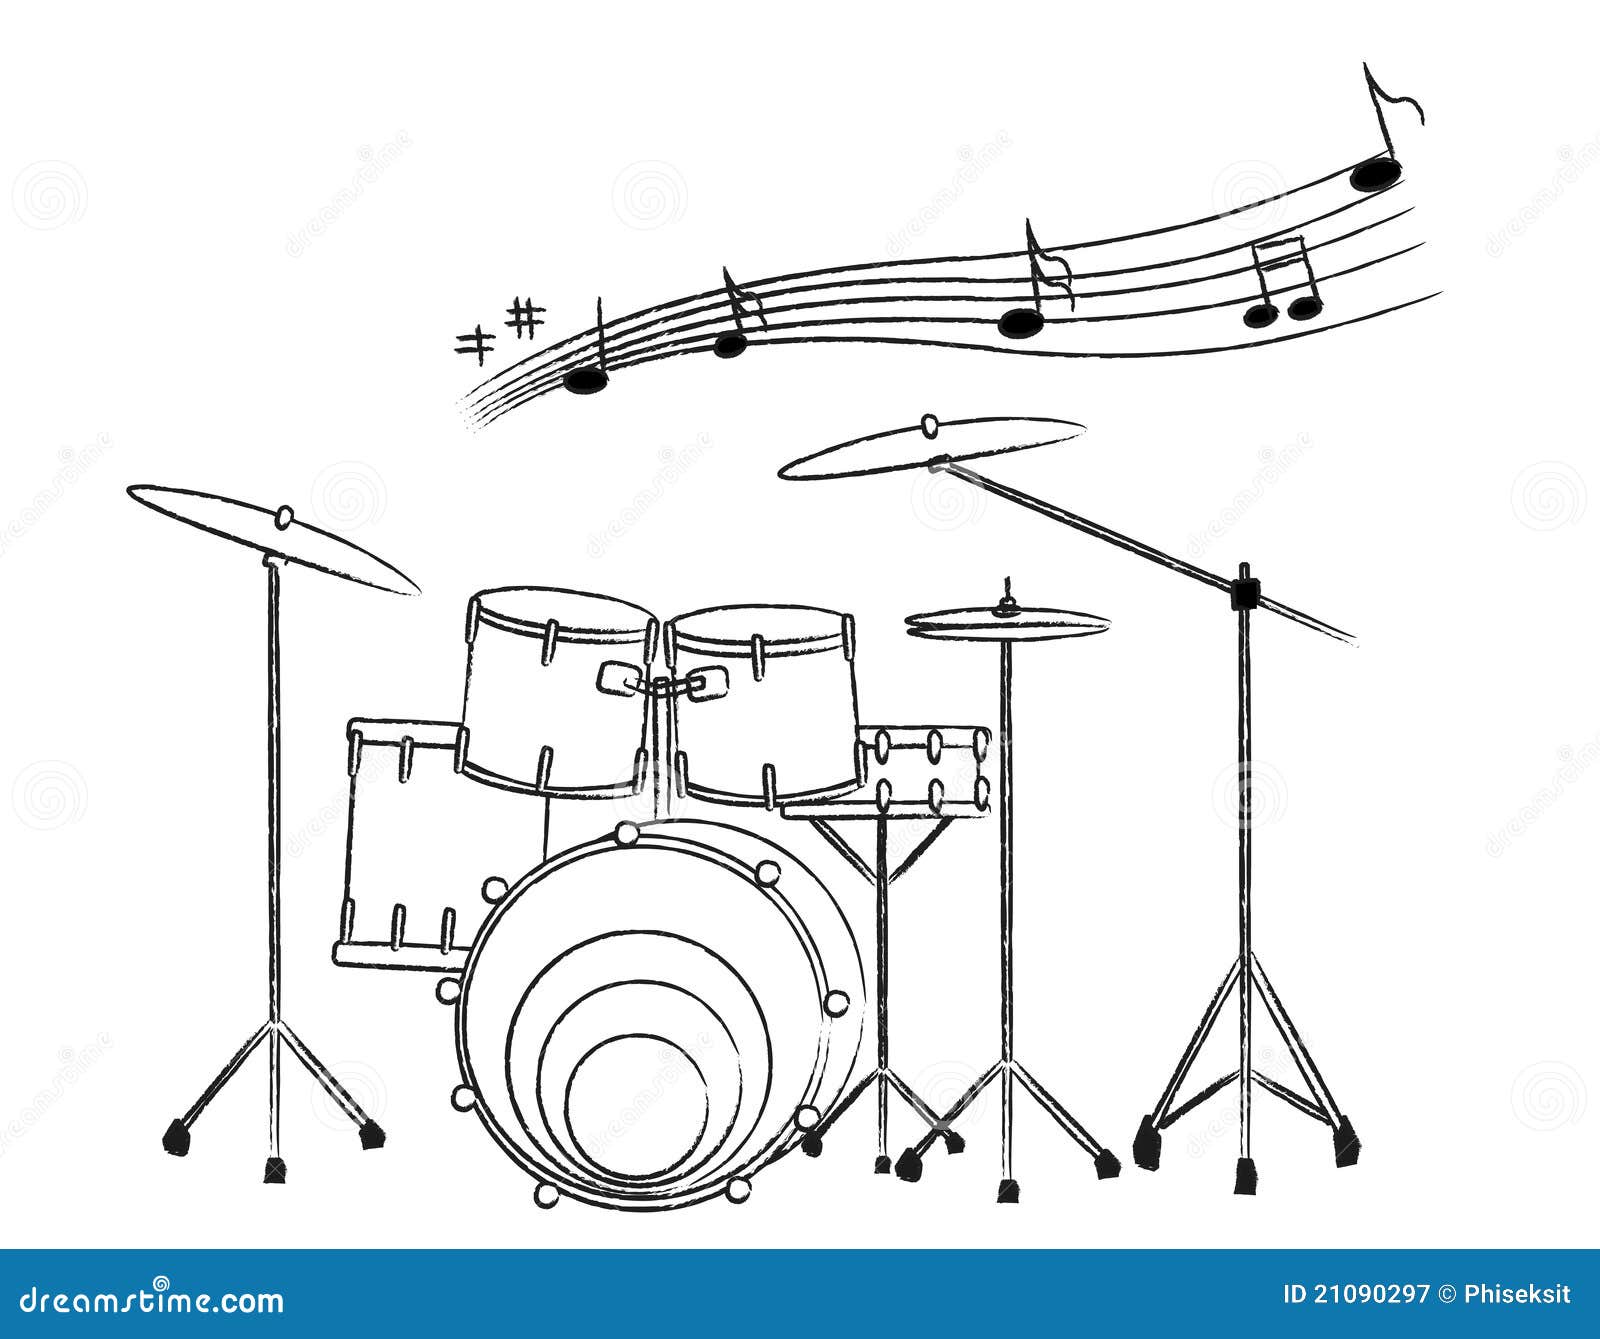 drum set drawing  Google Search  Dessin de musique Musique peinture  Coloriage